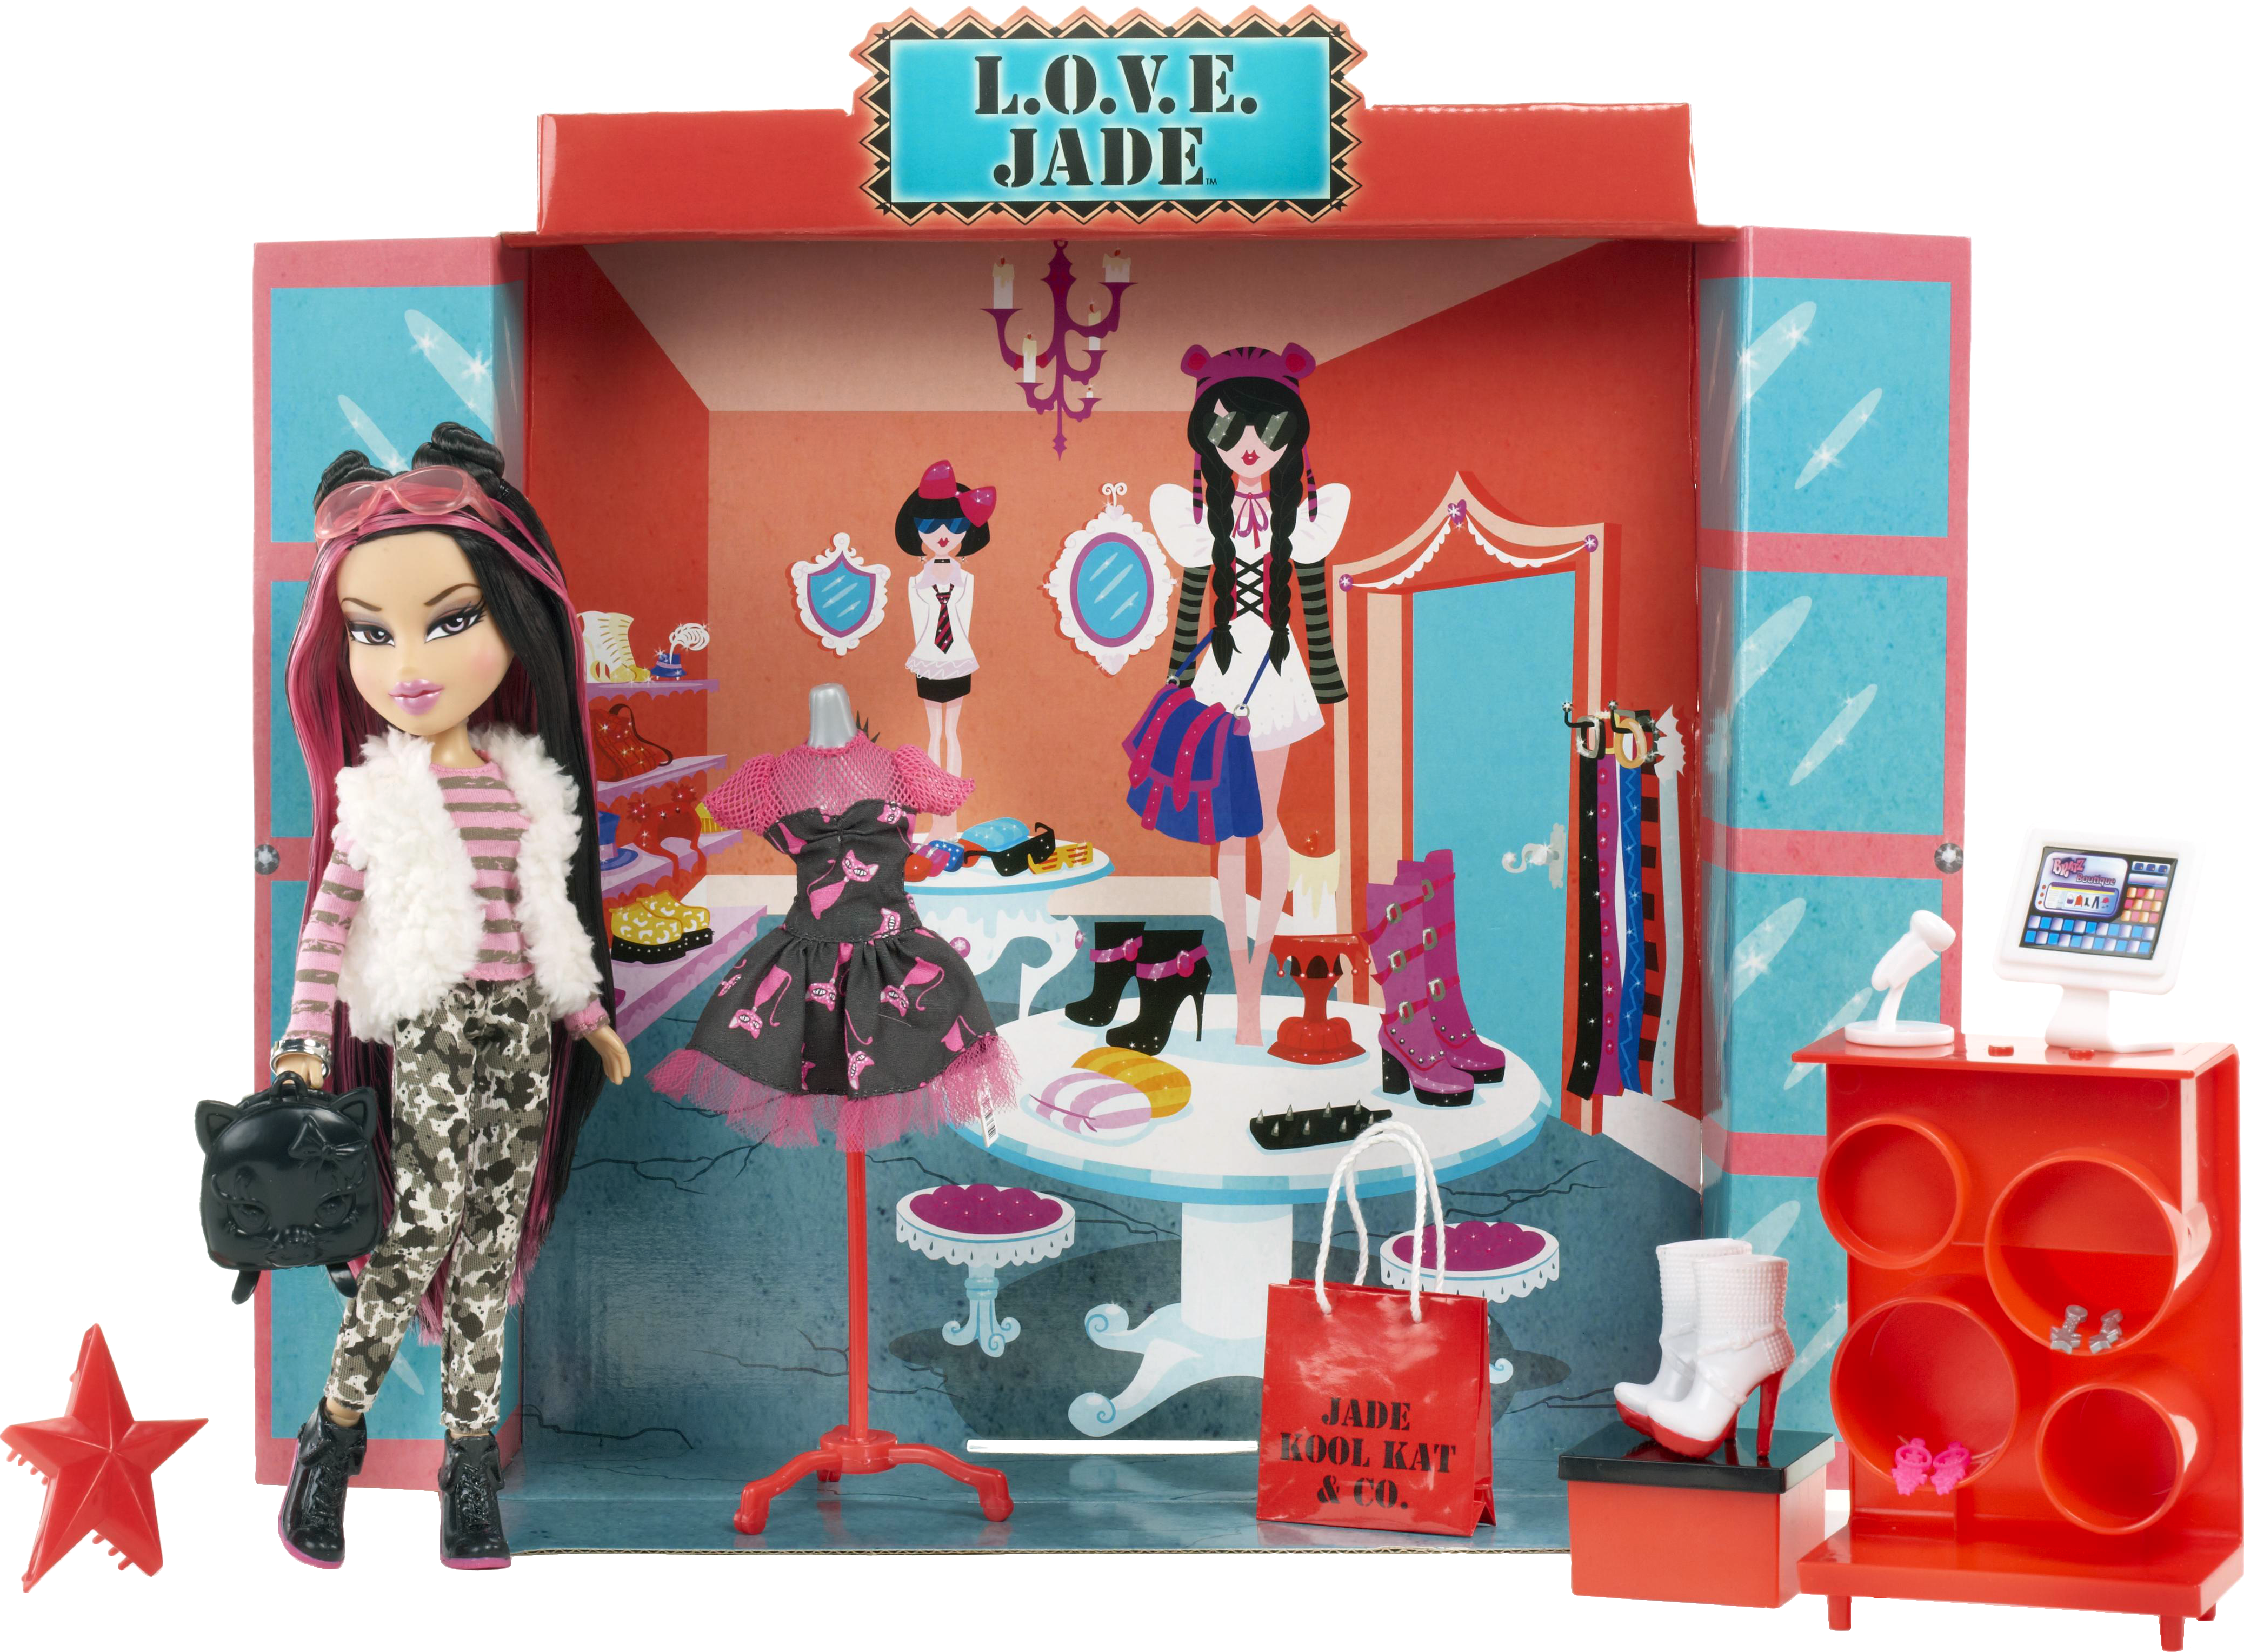 Куклы bratz (брац) - производители - интернет магазин детских игрушек snoopic: мягкие игрушки, пазлы.
